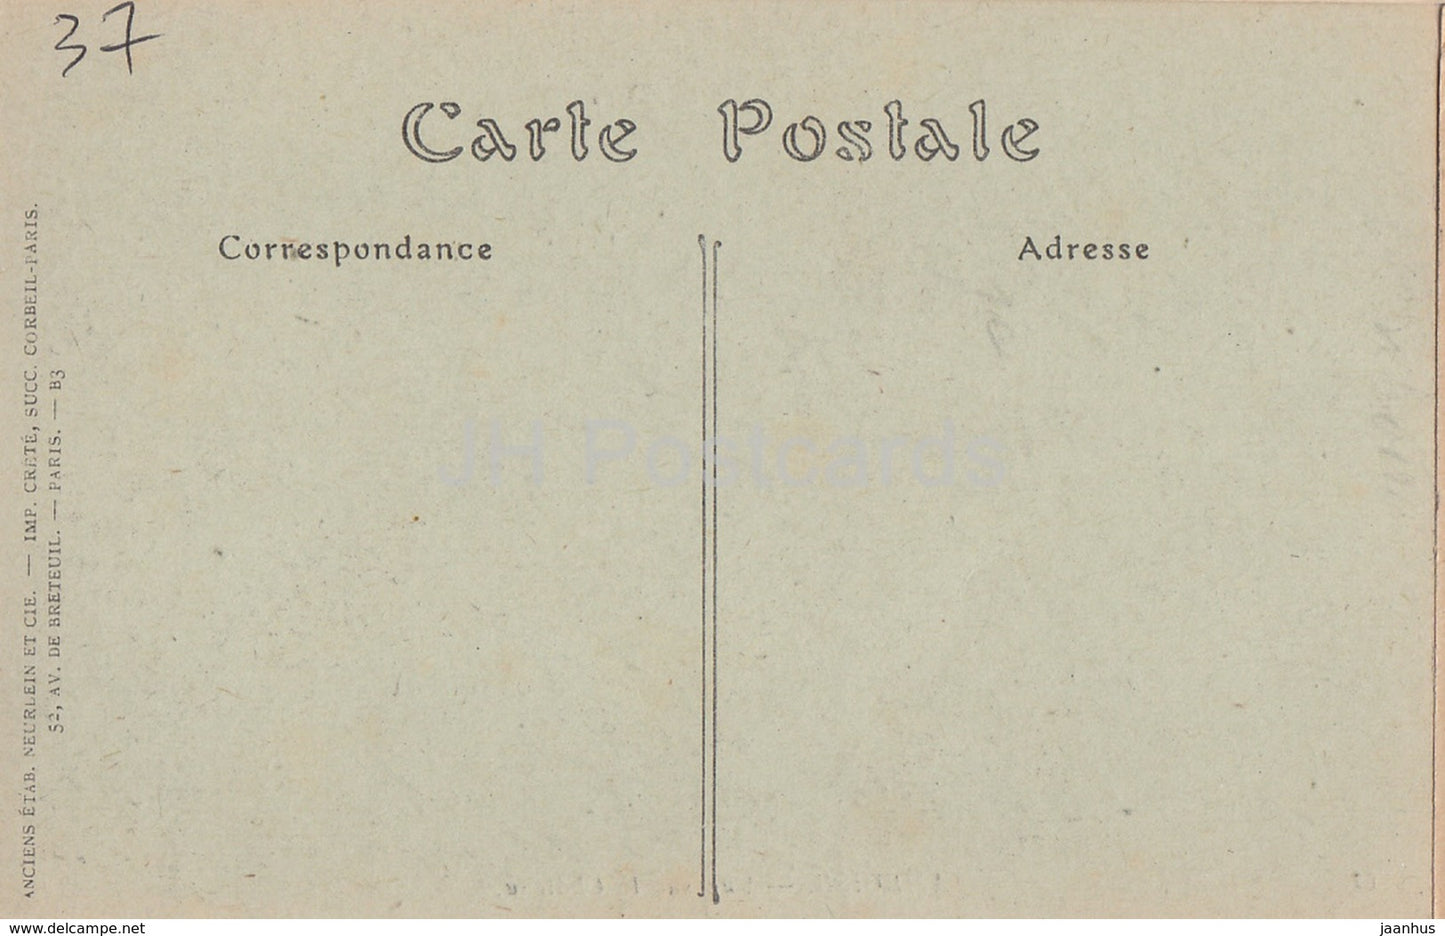 Amboise - Vue sur le Chateau - castle - 67 - old postcard - France - unused